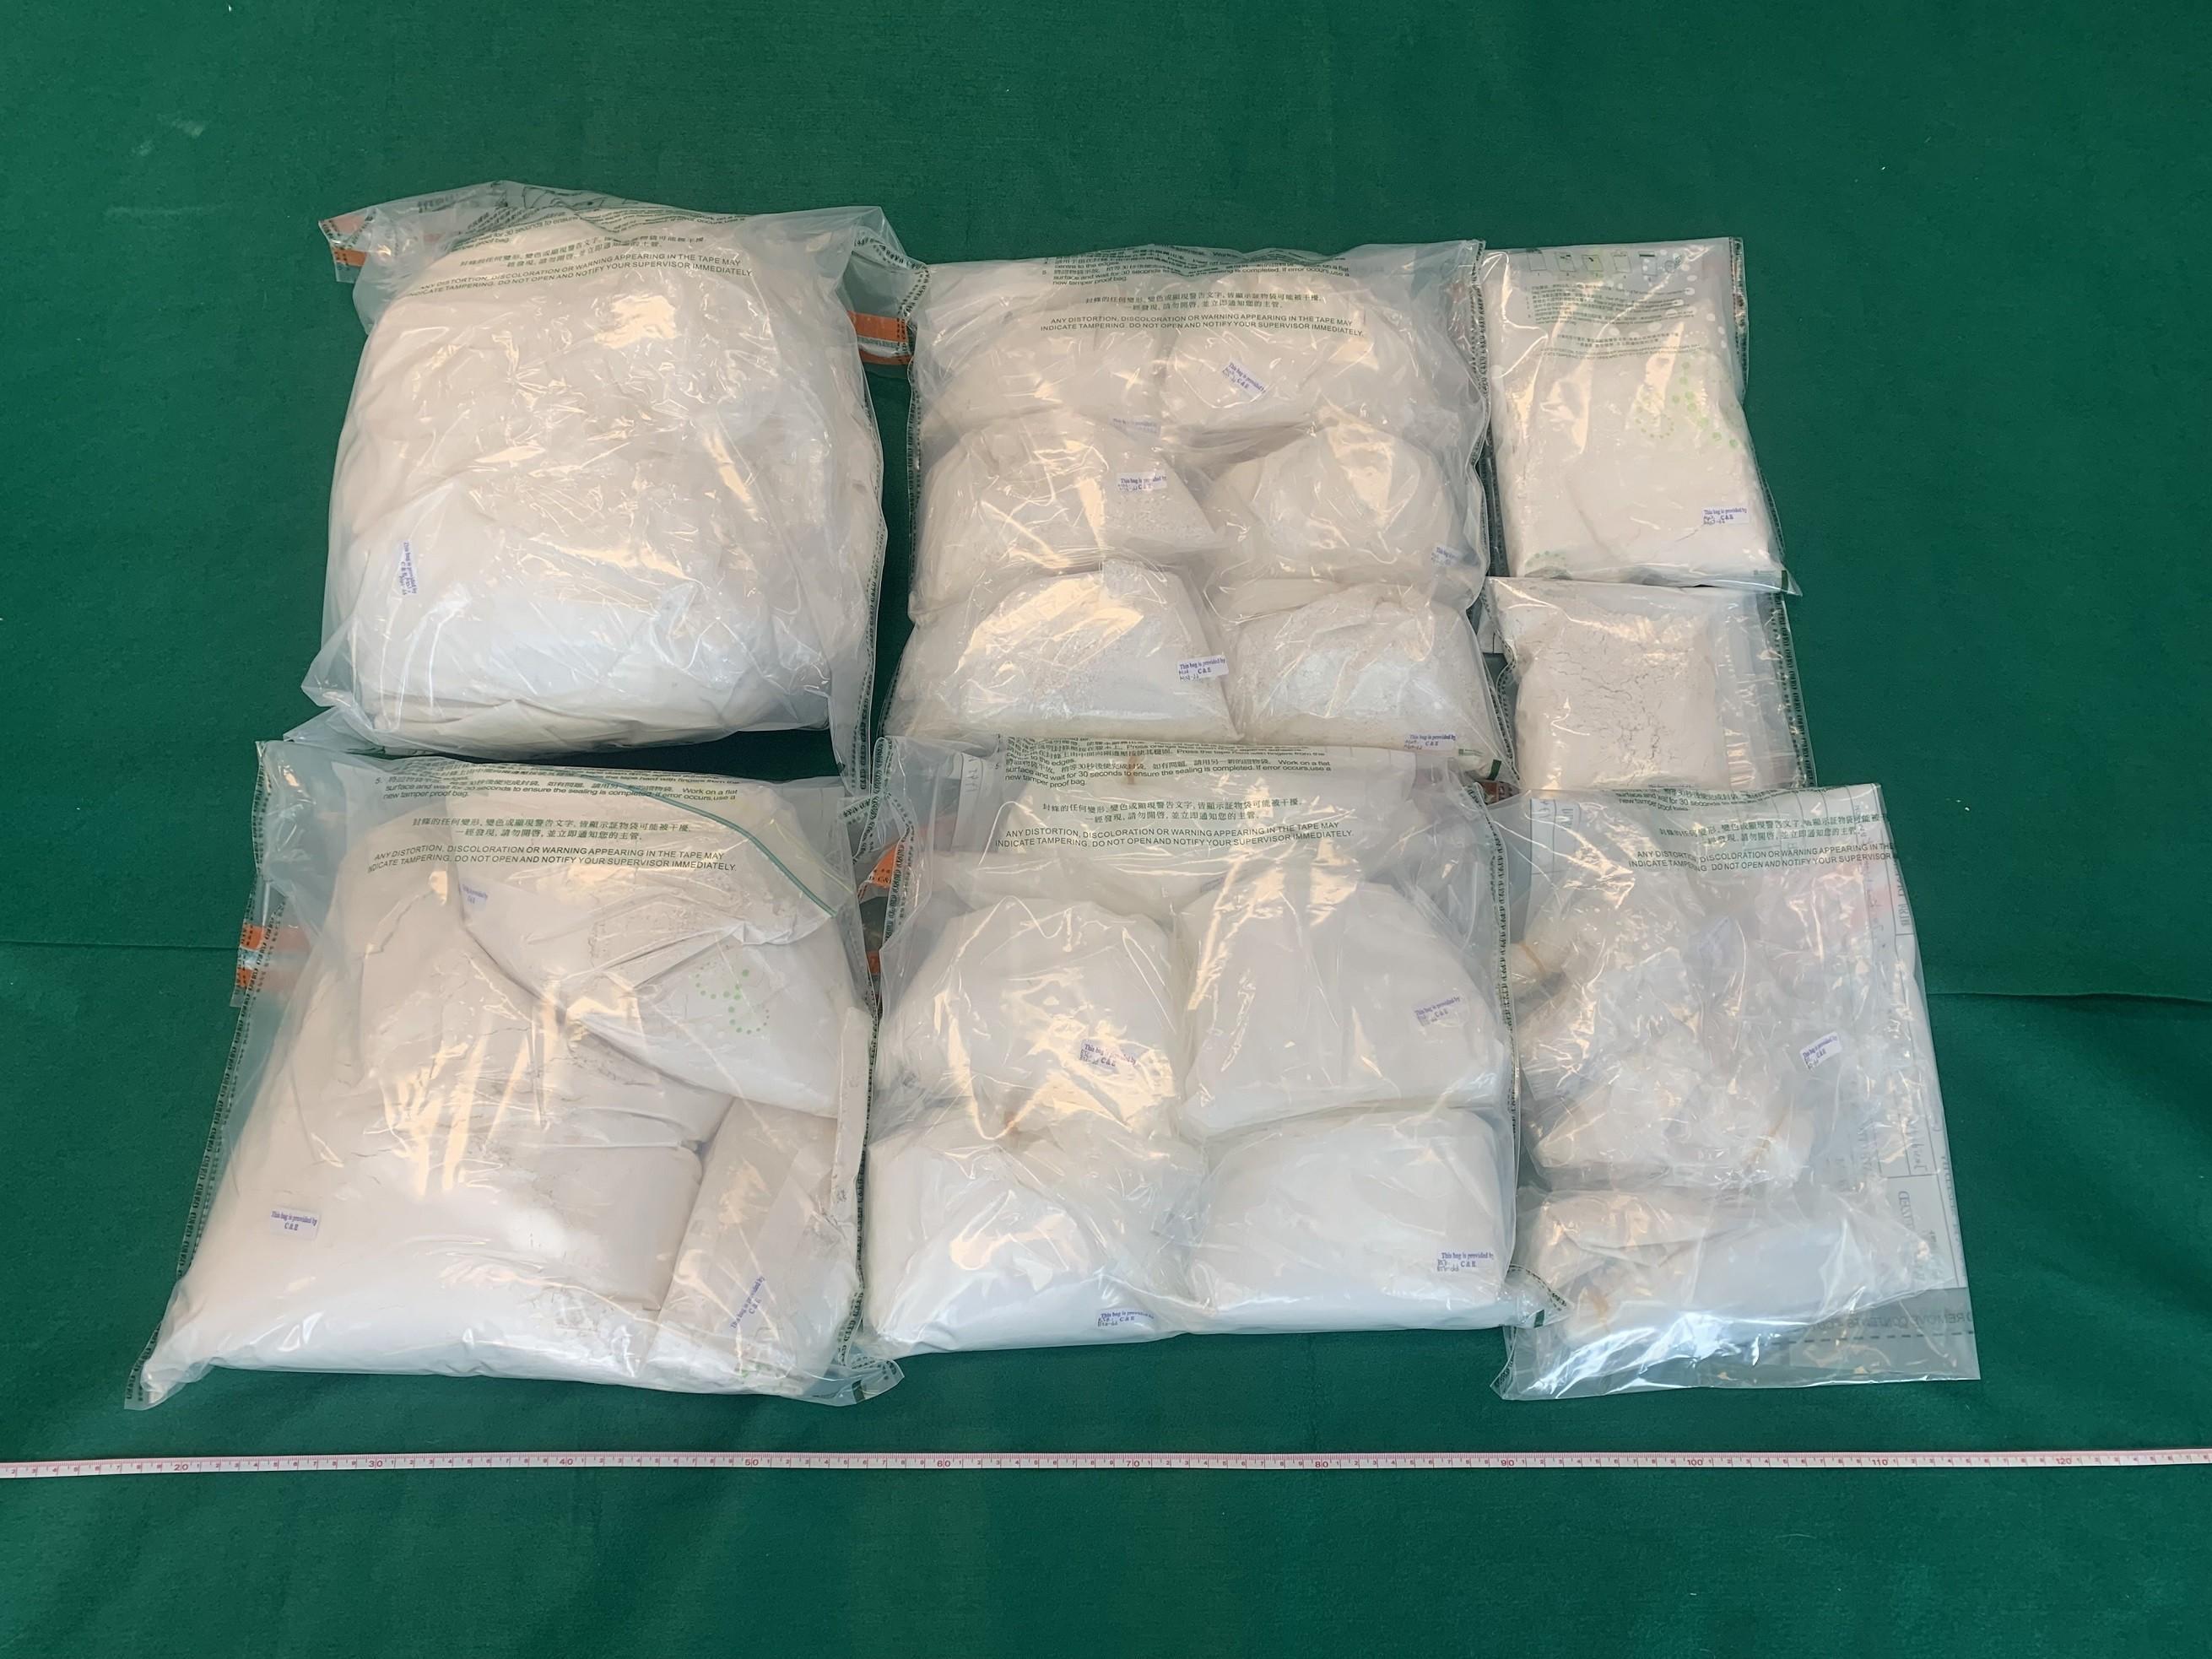 馬來西亞空運到港40包咖啡粉內藏4包毒品海關拘捕53歲男子 – 大紀元時報-香港